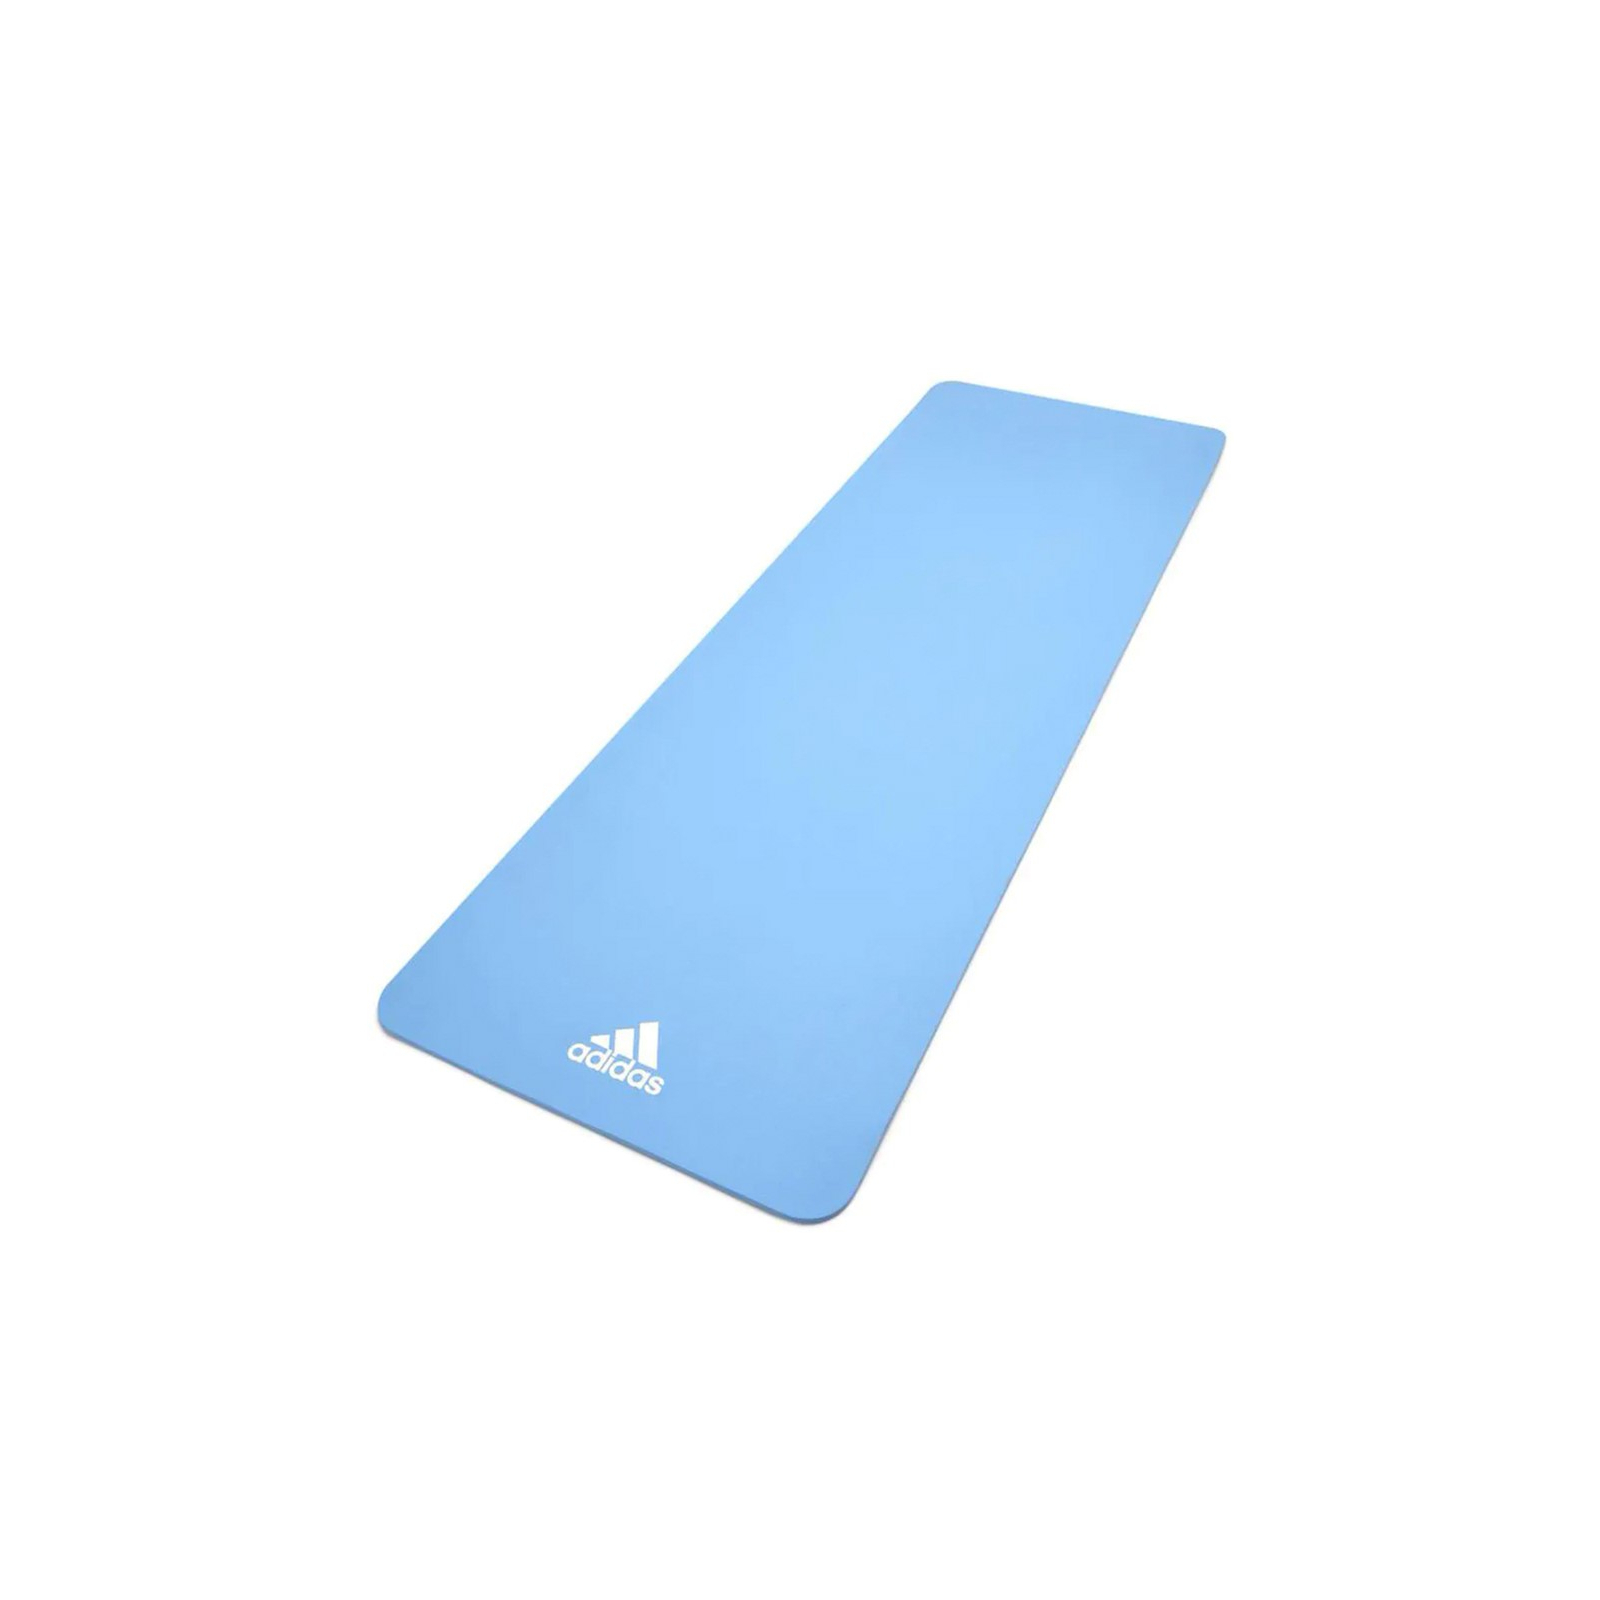 Коврик для йоги Adidas Yoga Mat Уні 176 х 61 х 0,8 см Рожевий (ADYG-10100PK)